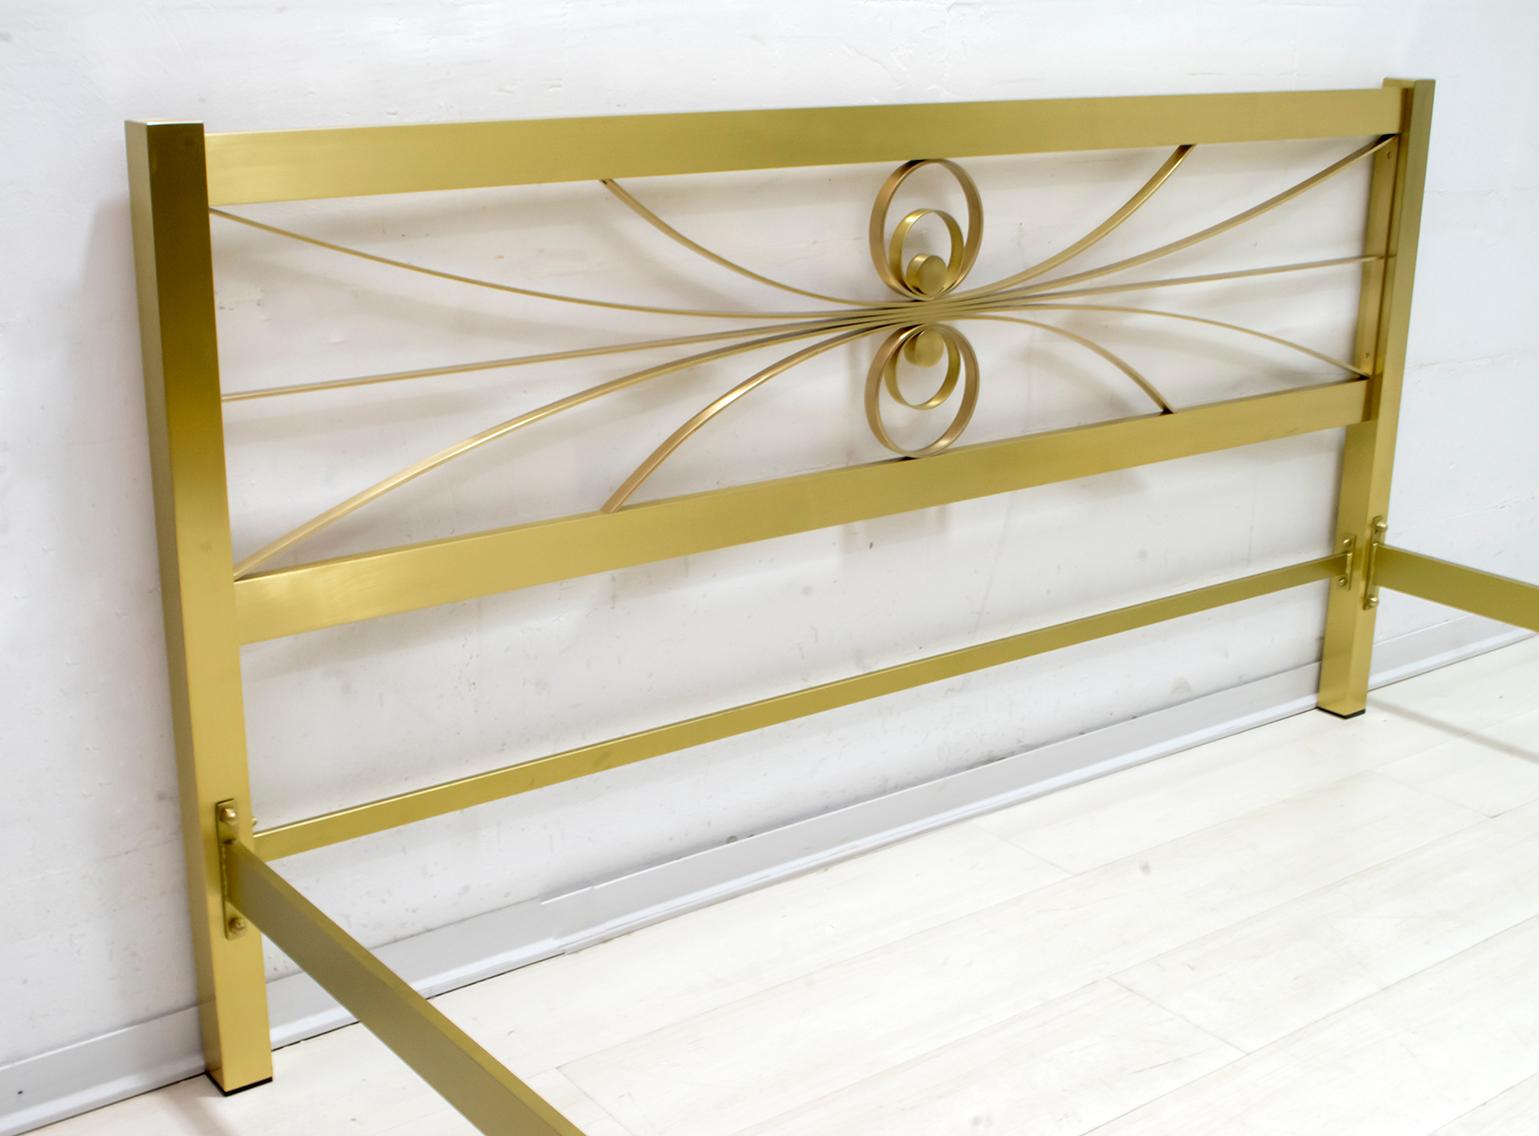 Elegantes Doppelbett, entworfen von Luciano Frigerio, Italien, 1970er Jahre, in gutem Originalzustand, Bett wurde in einem Lager einer Möbelfabrik aufbewahrt. Der dekorative Teil besteht aus vergoldeten Metallquerstreben.